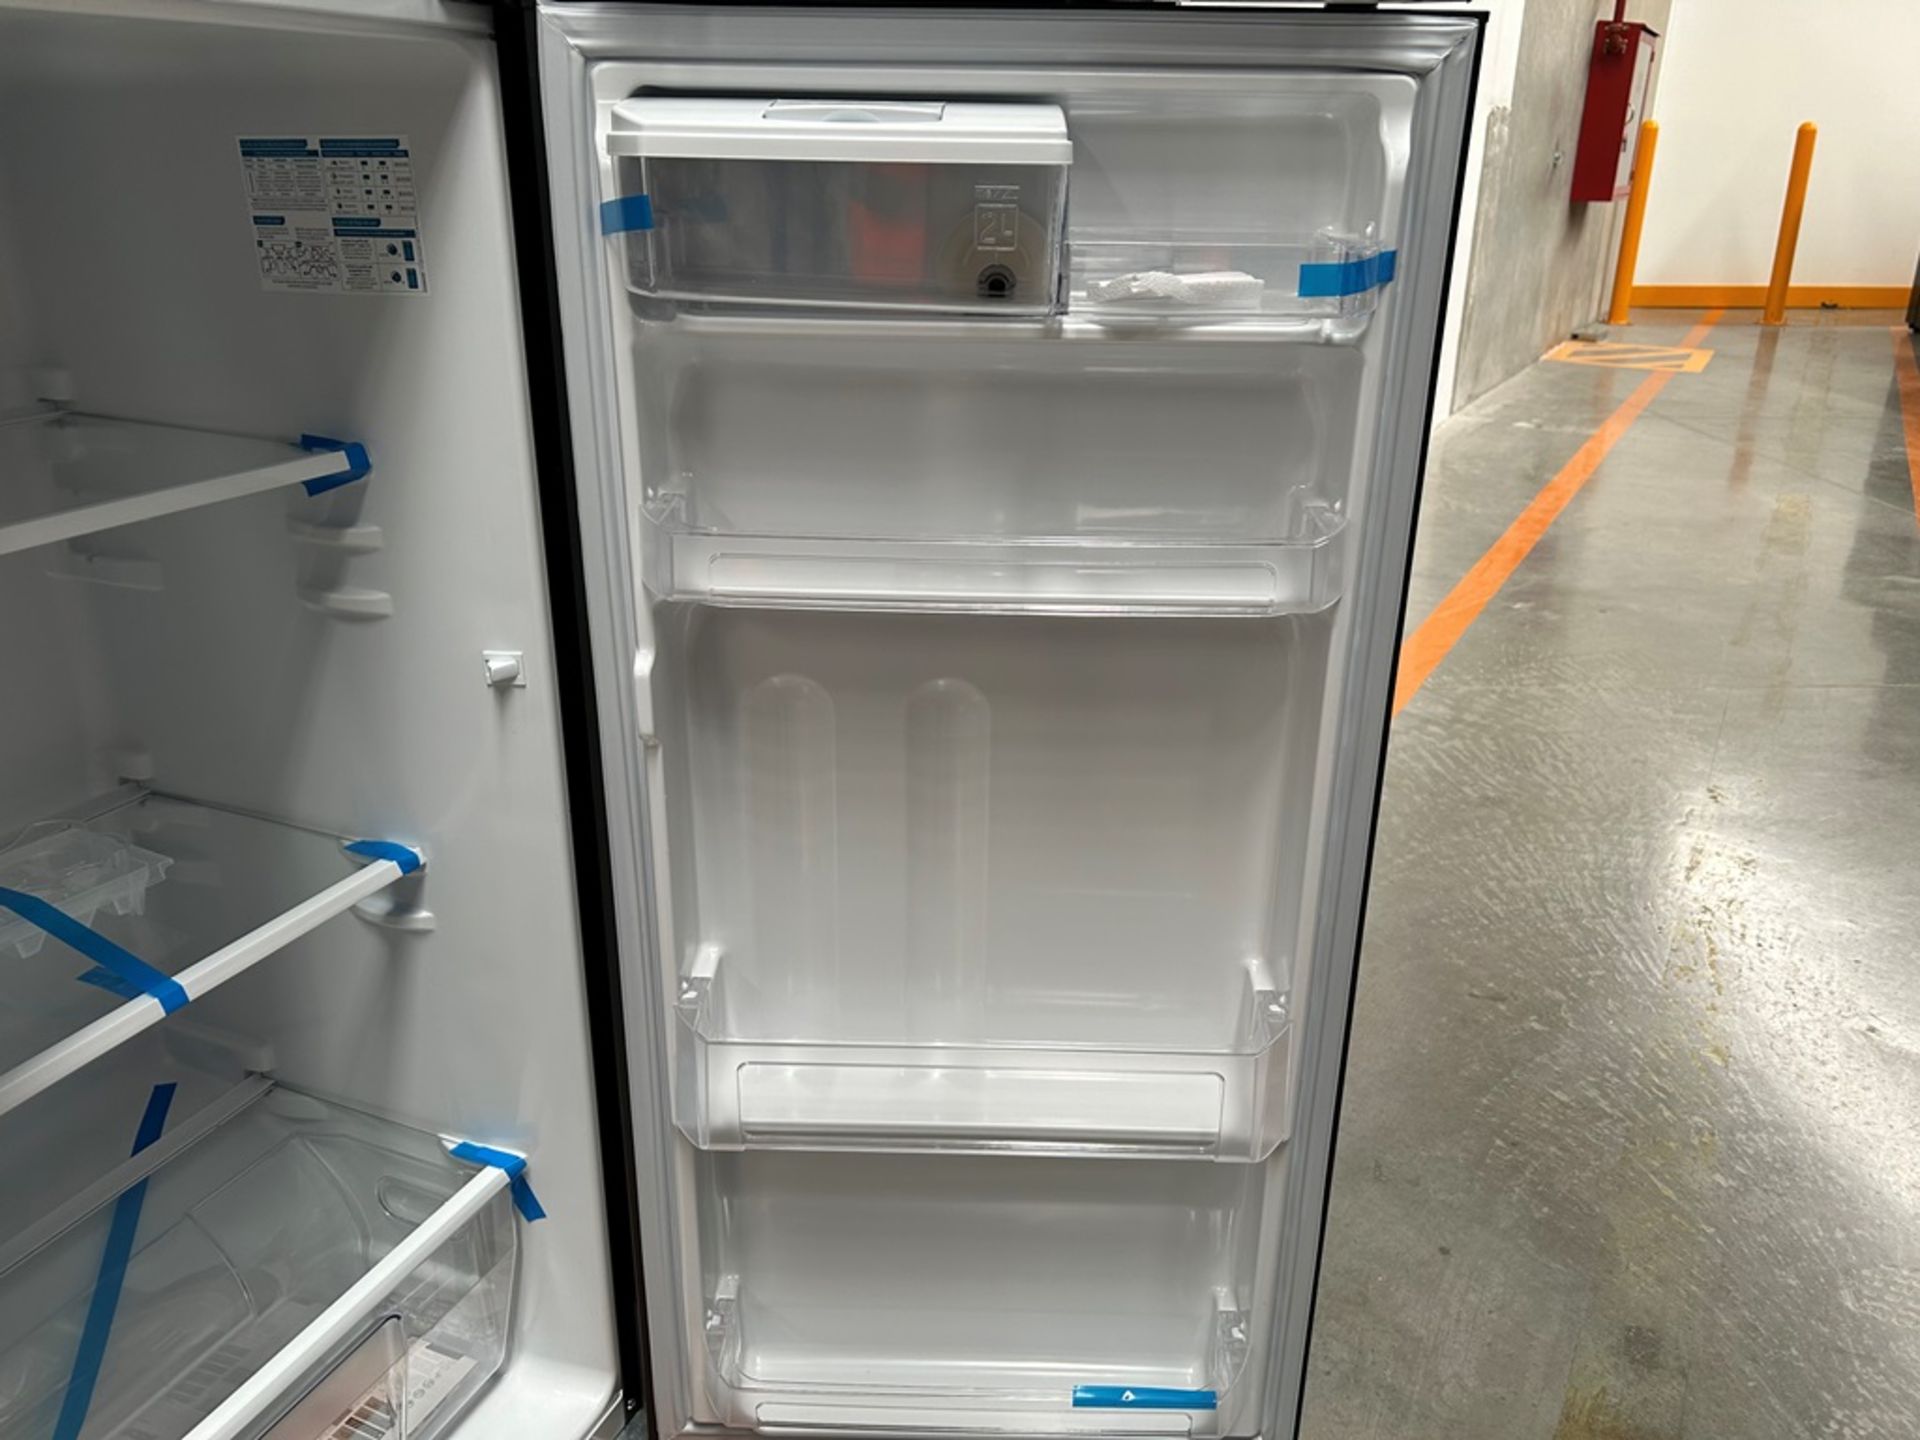 Lote de 2 refrigeradores contiene: 1 refrigerador con dispensador de agua Marca MABE, Modelo RMA300 - Image 8 of 18